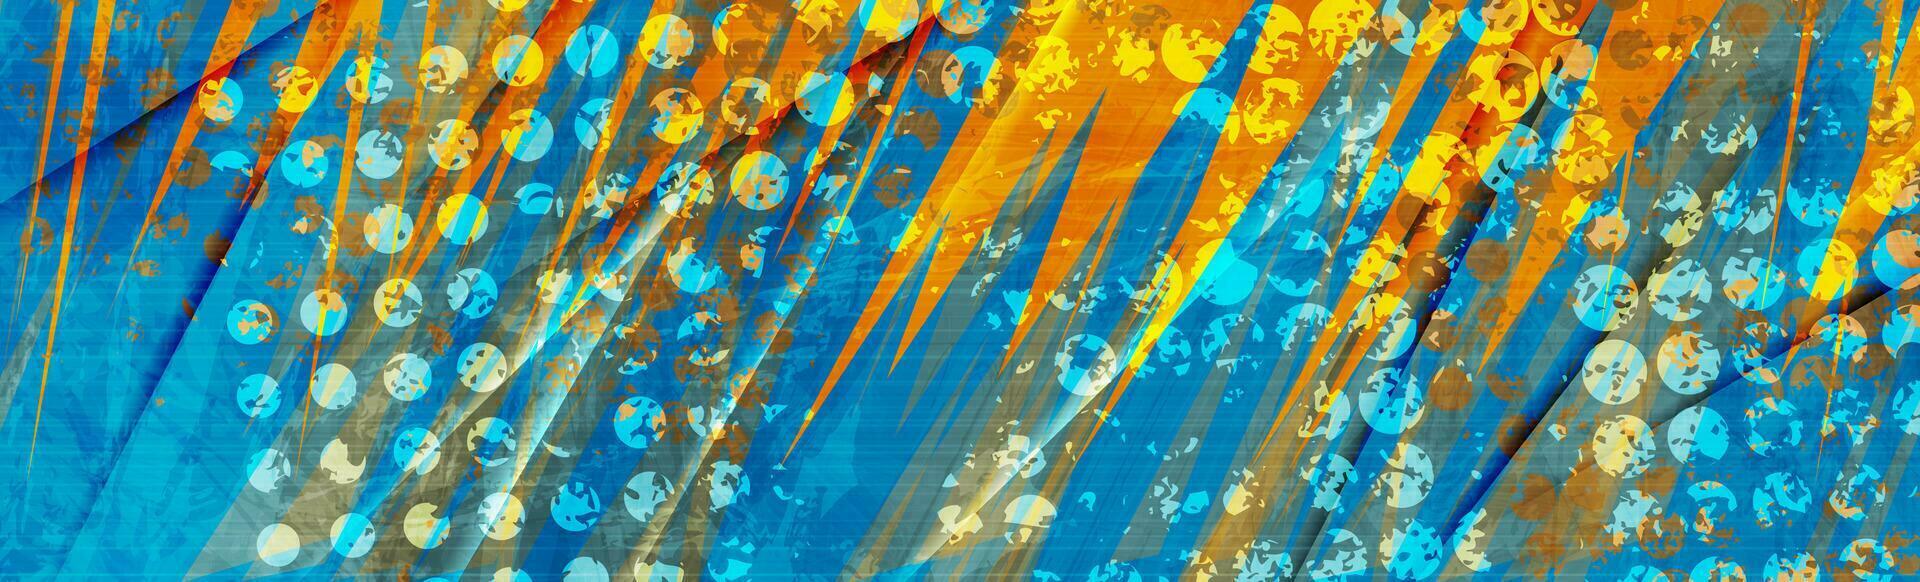 abstrakt Orange und Blau Grunge künstlerisch Hintergrund vektor